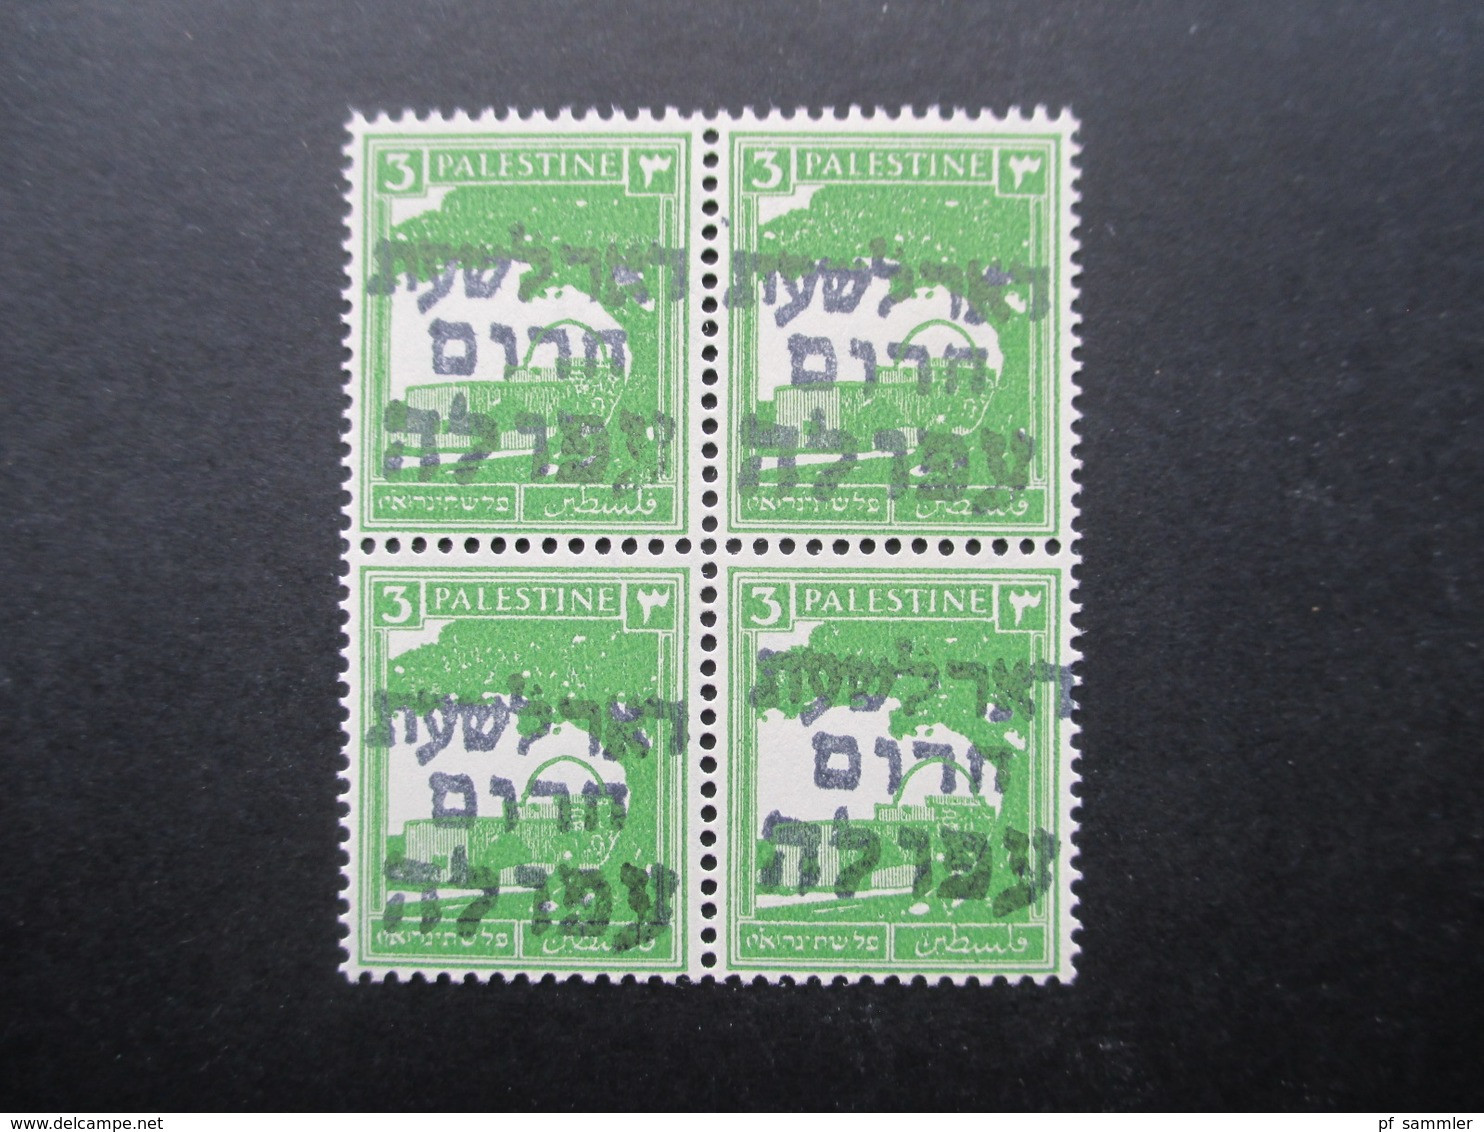 Palestina / Israel 1948 Interimspost ** / Postfrischer 4er Block Aufdruck Afula Emergency Post / Emergency Mail - Palästina